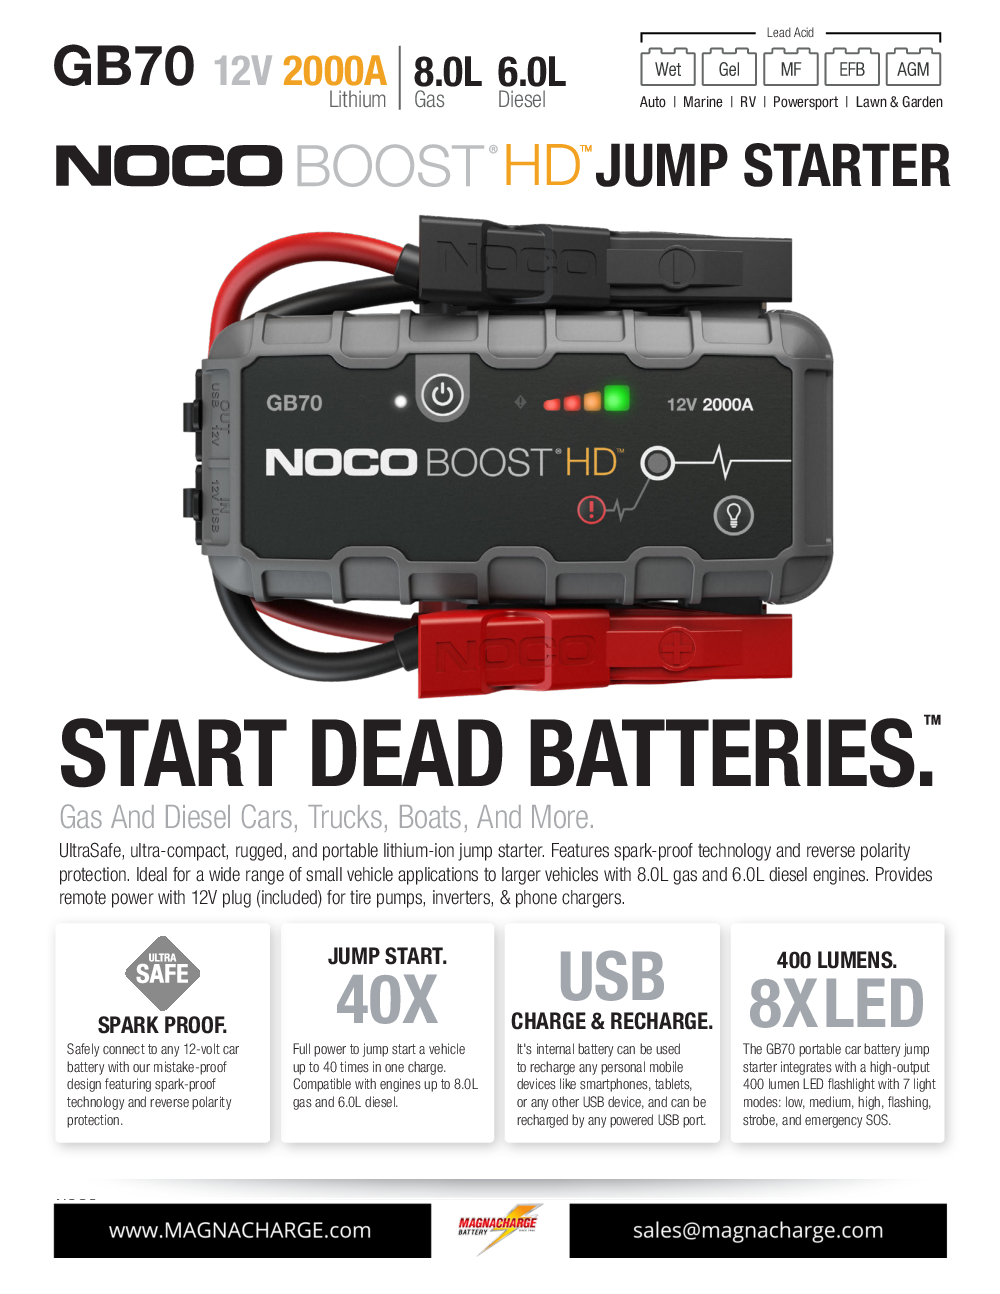 NOCO GB70 - EDITED